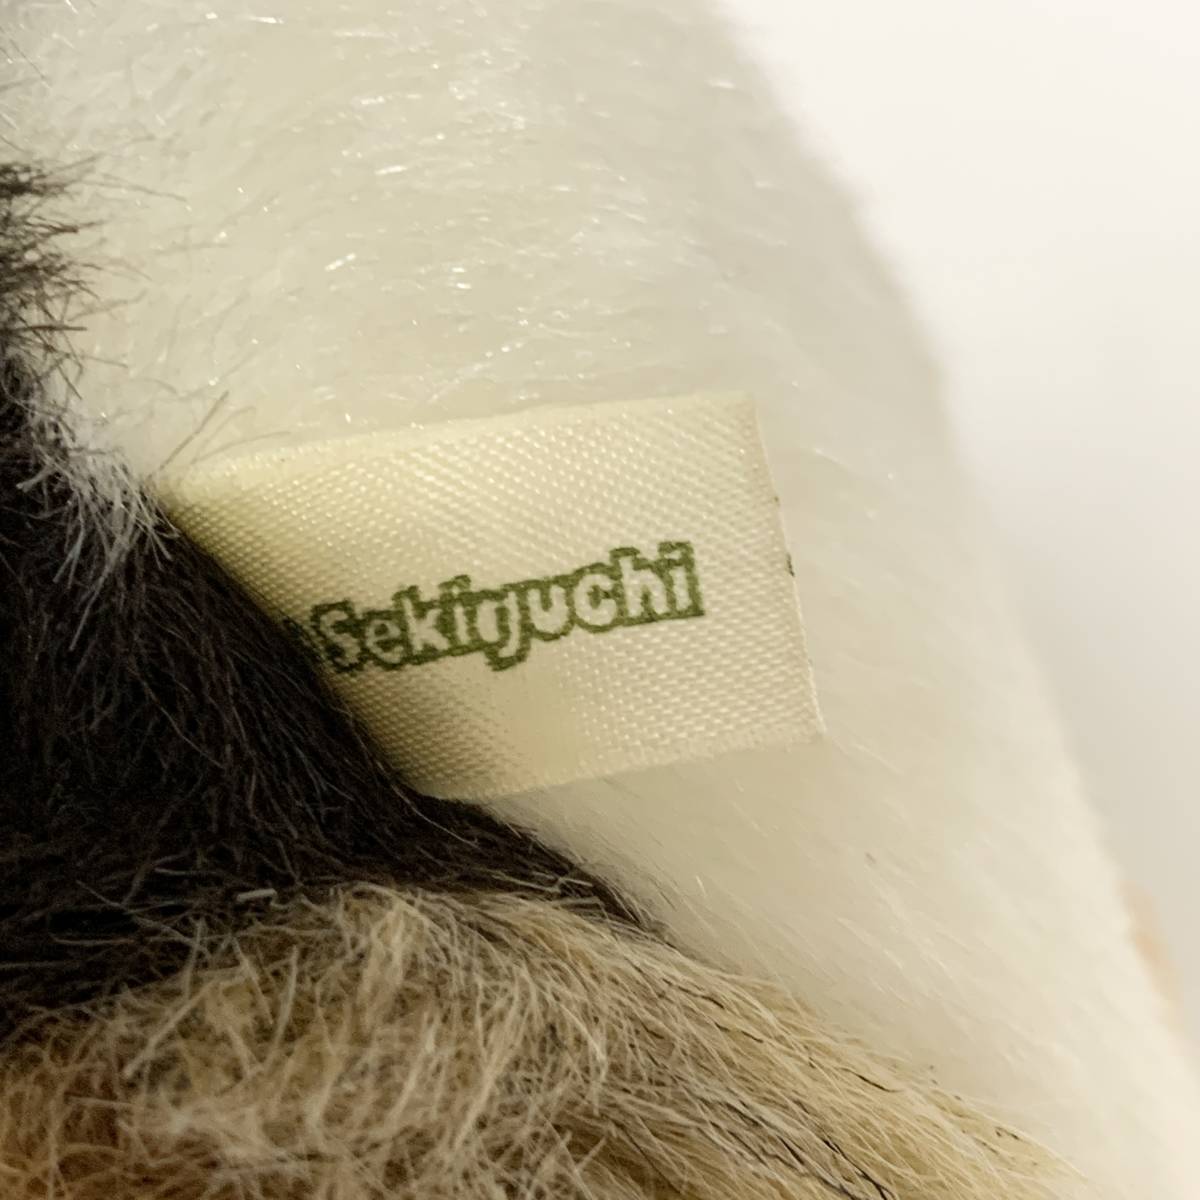 sekiguchi セキグチ ぬいぐるみ 2個セット クマ 熊 カルガモ レトロ 人形 動物 34㎝ 17㎝_画像9